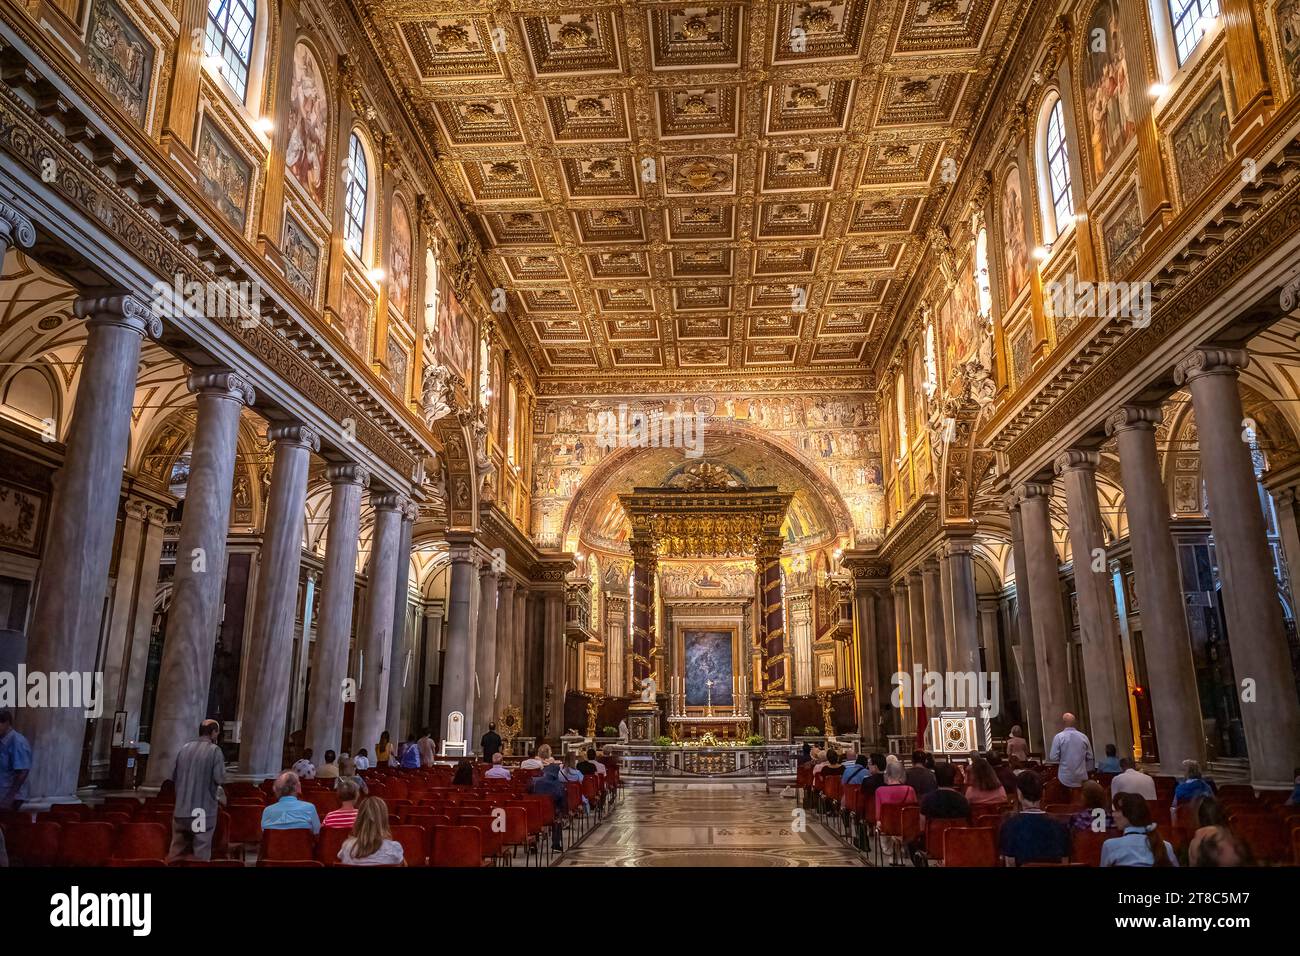 Basilica papale di Santa Maria Maggiore Rome Italie Images de l'intérieur Banque D'Images